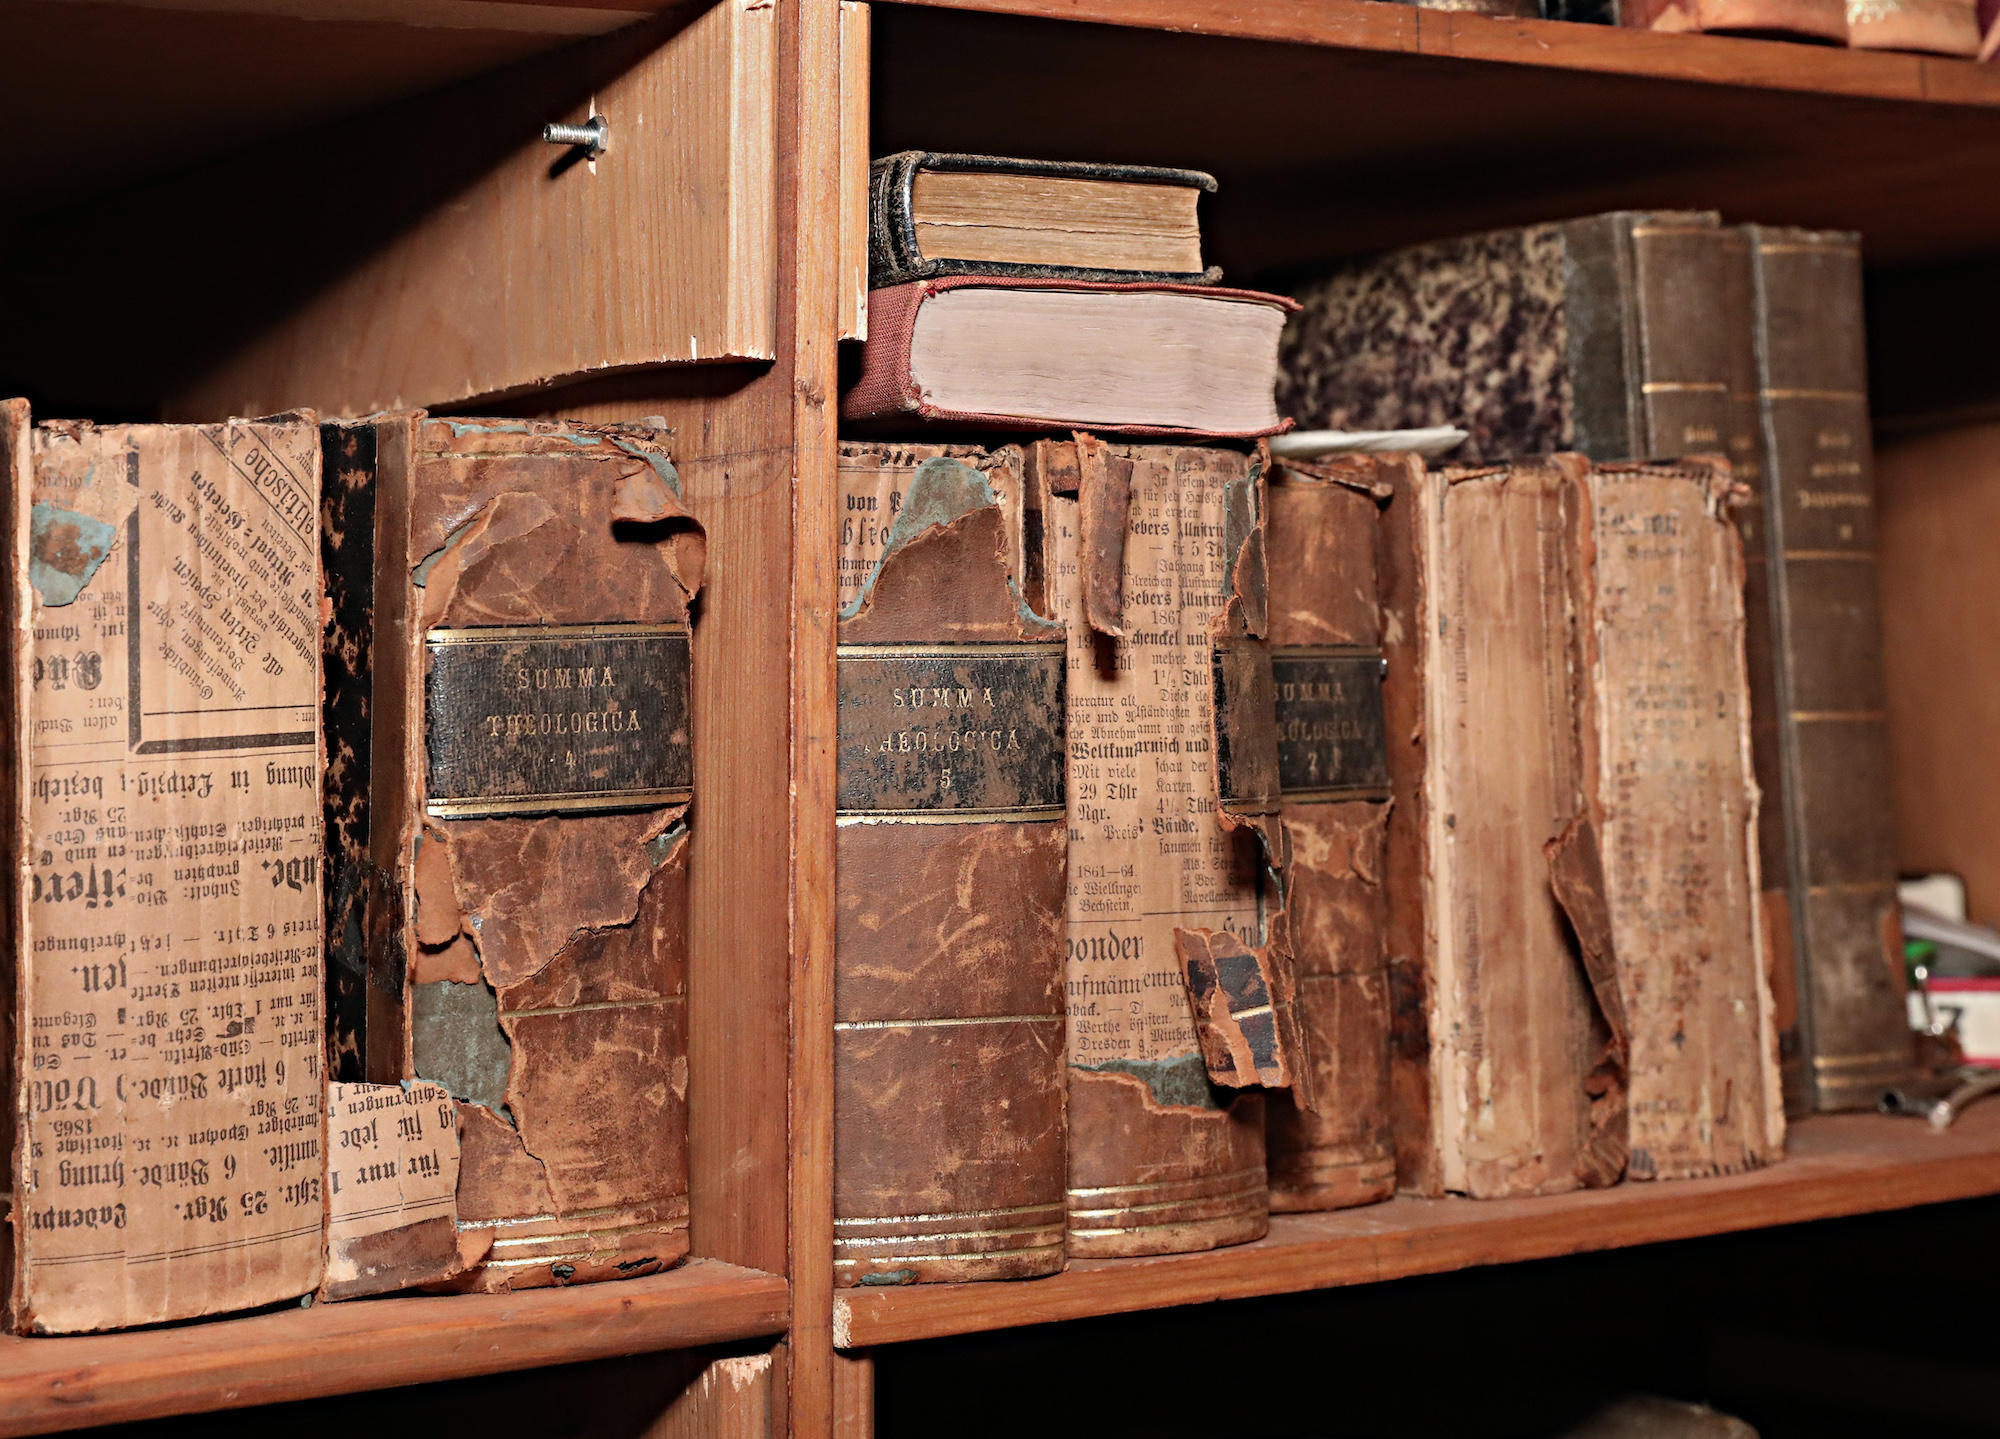 Die Bibliothek birgt Bücher aus fünf Jahrhunderten, darunter theologische Werke des 19. Jahrhunderts und antiquarische Werke. (c) Dirk Jochmann